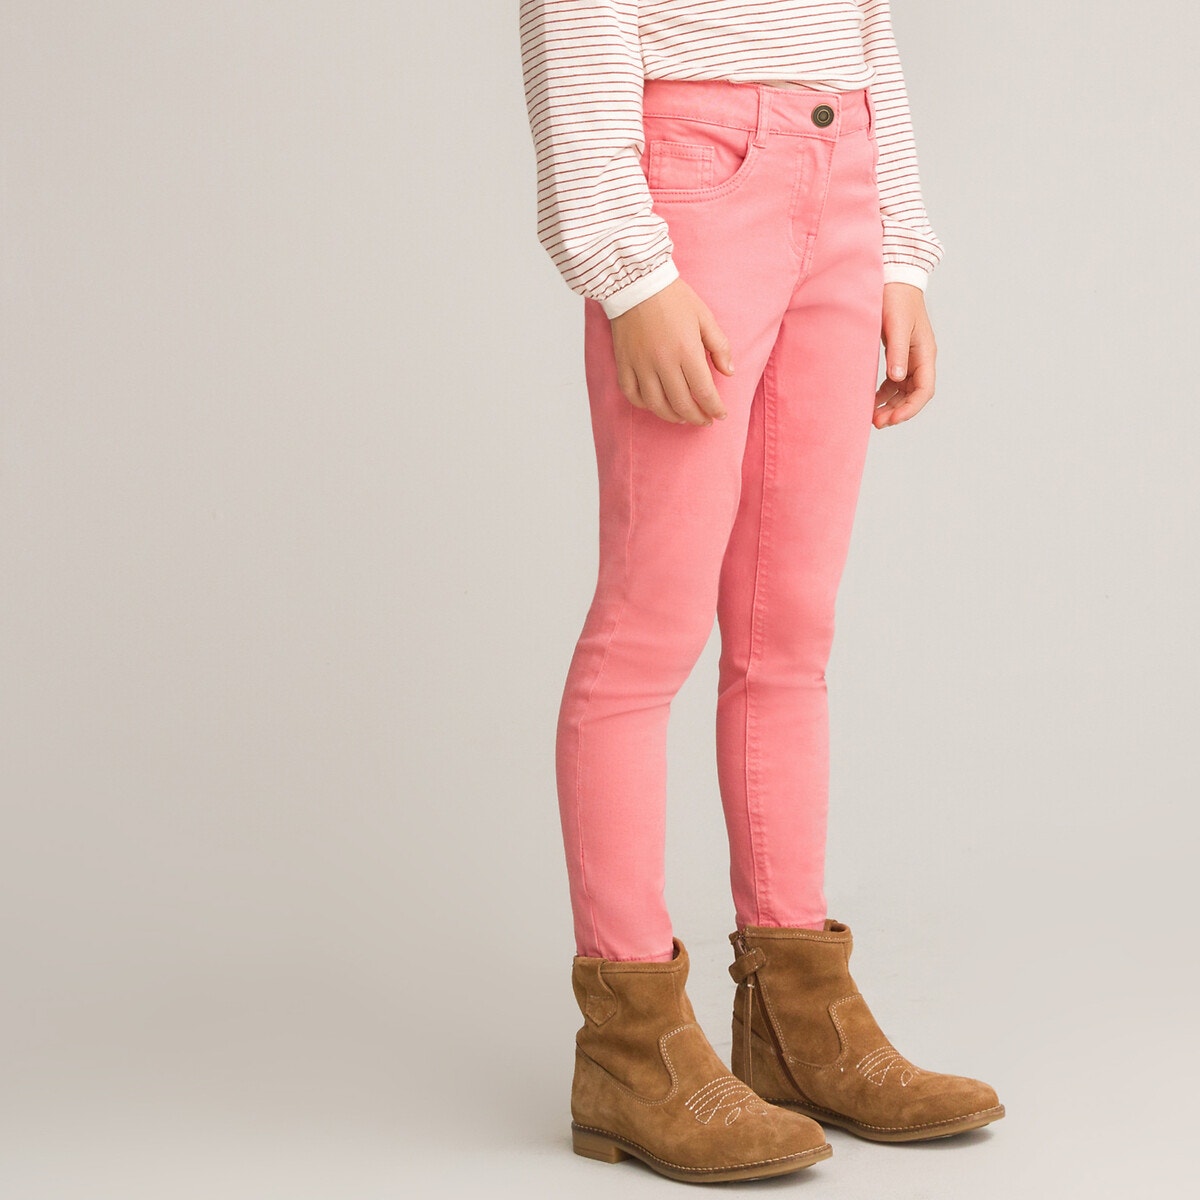 ΠΑΙΔΙ | Παντελόνια Πεντάτσεπο παντελόνι με κέντημα, 3-12 ετών